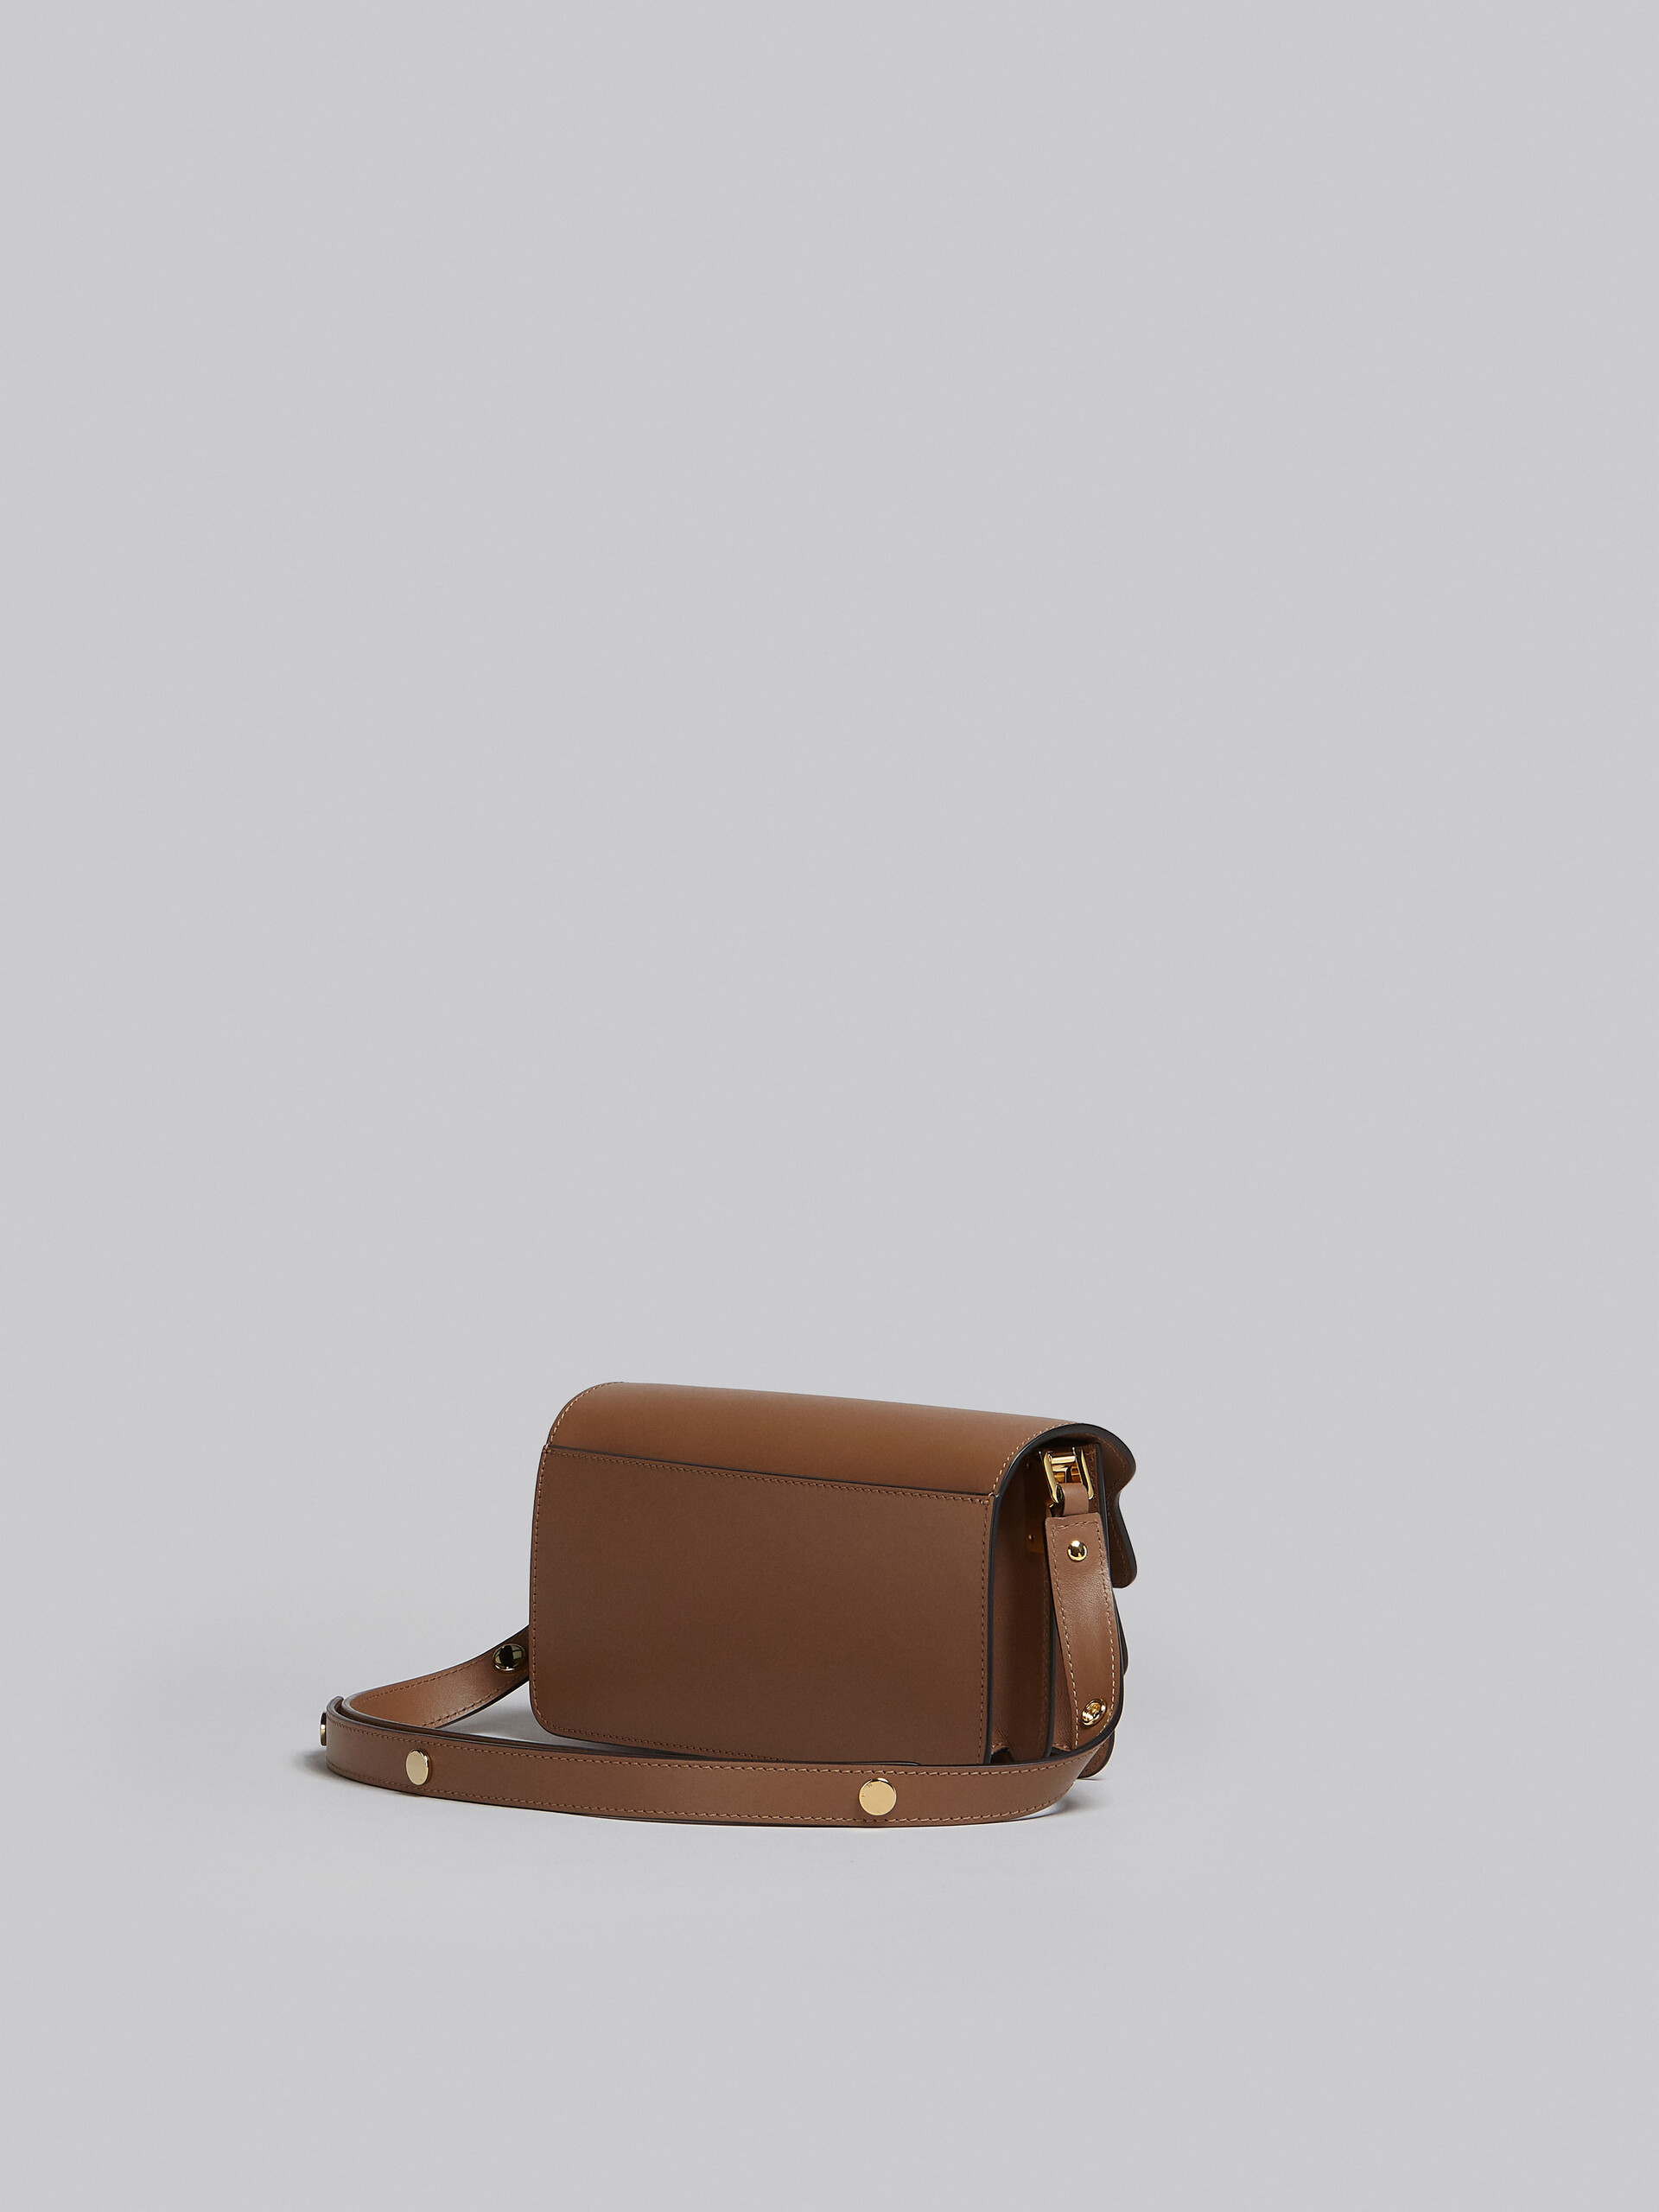 Tasche Trunk aus braunem Leder - Schultertaschen - Image 3